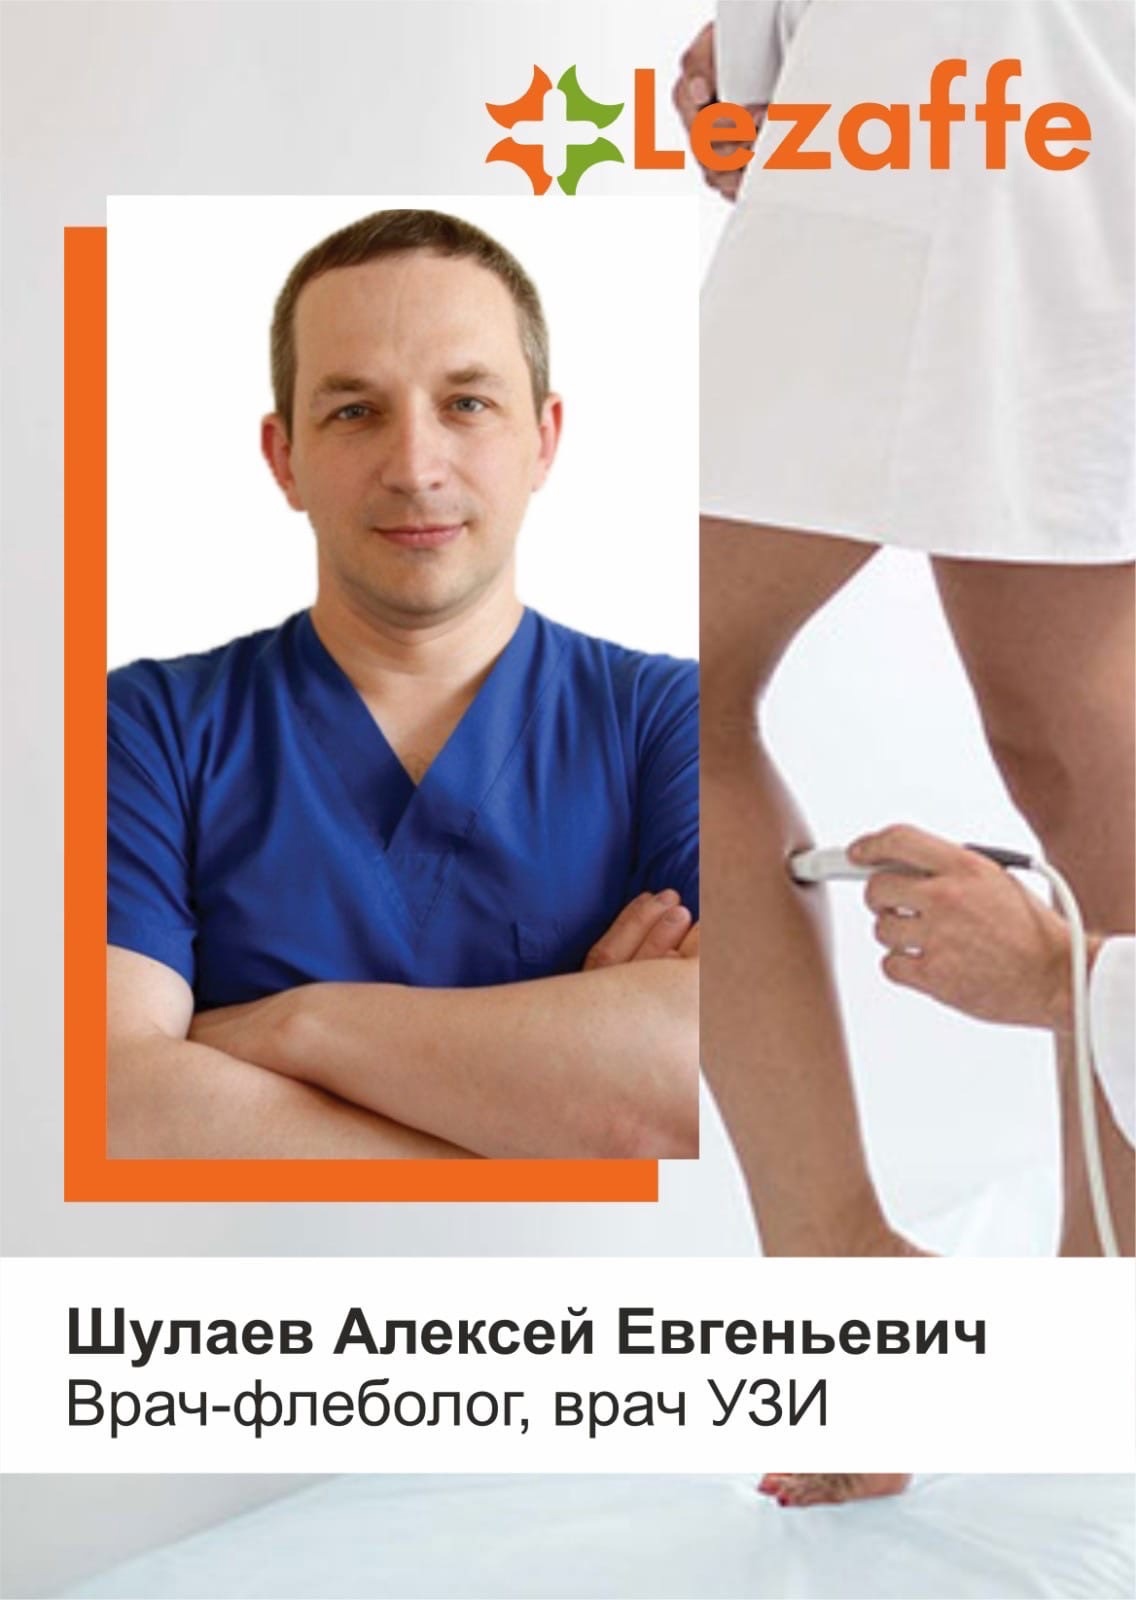 Шулаев Алексей Евгеньевич - хирург, онколог, вакуумная аспирационная биопсия в клинике Lezaffe г. Нягань